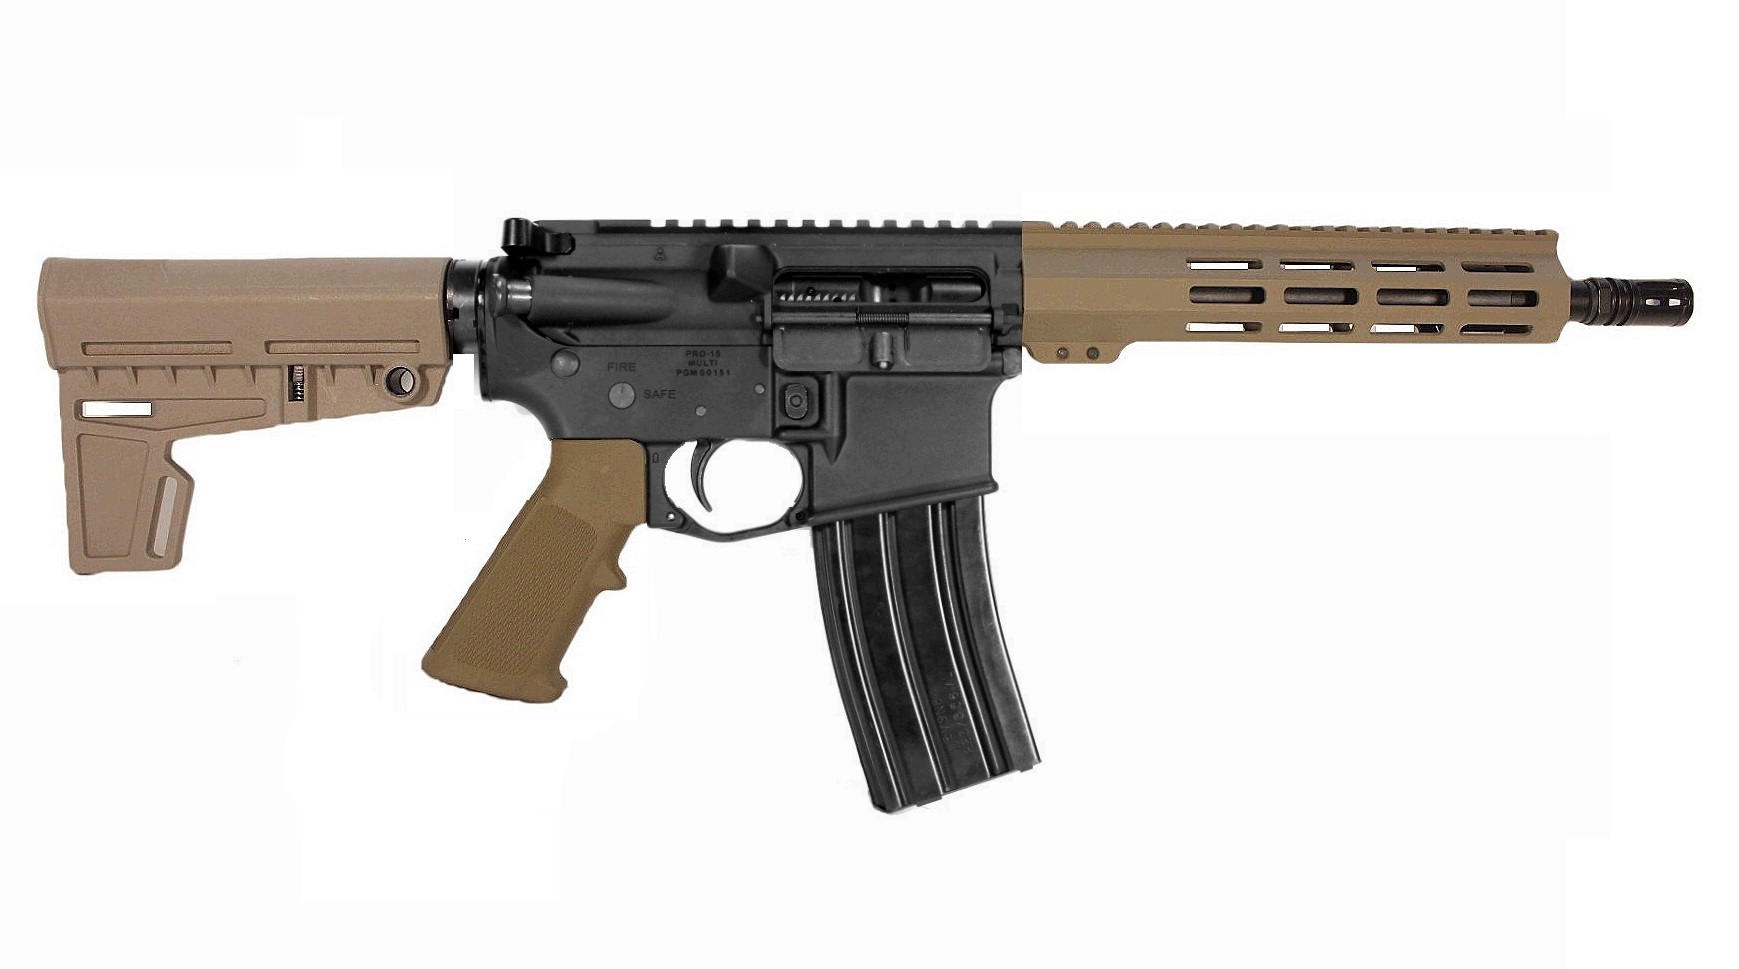 10.5 inch 450 Bushmaster AR-15 Pistol in BLK/FDE